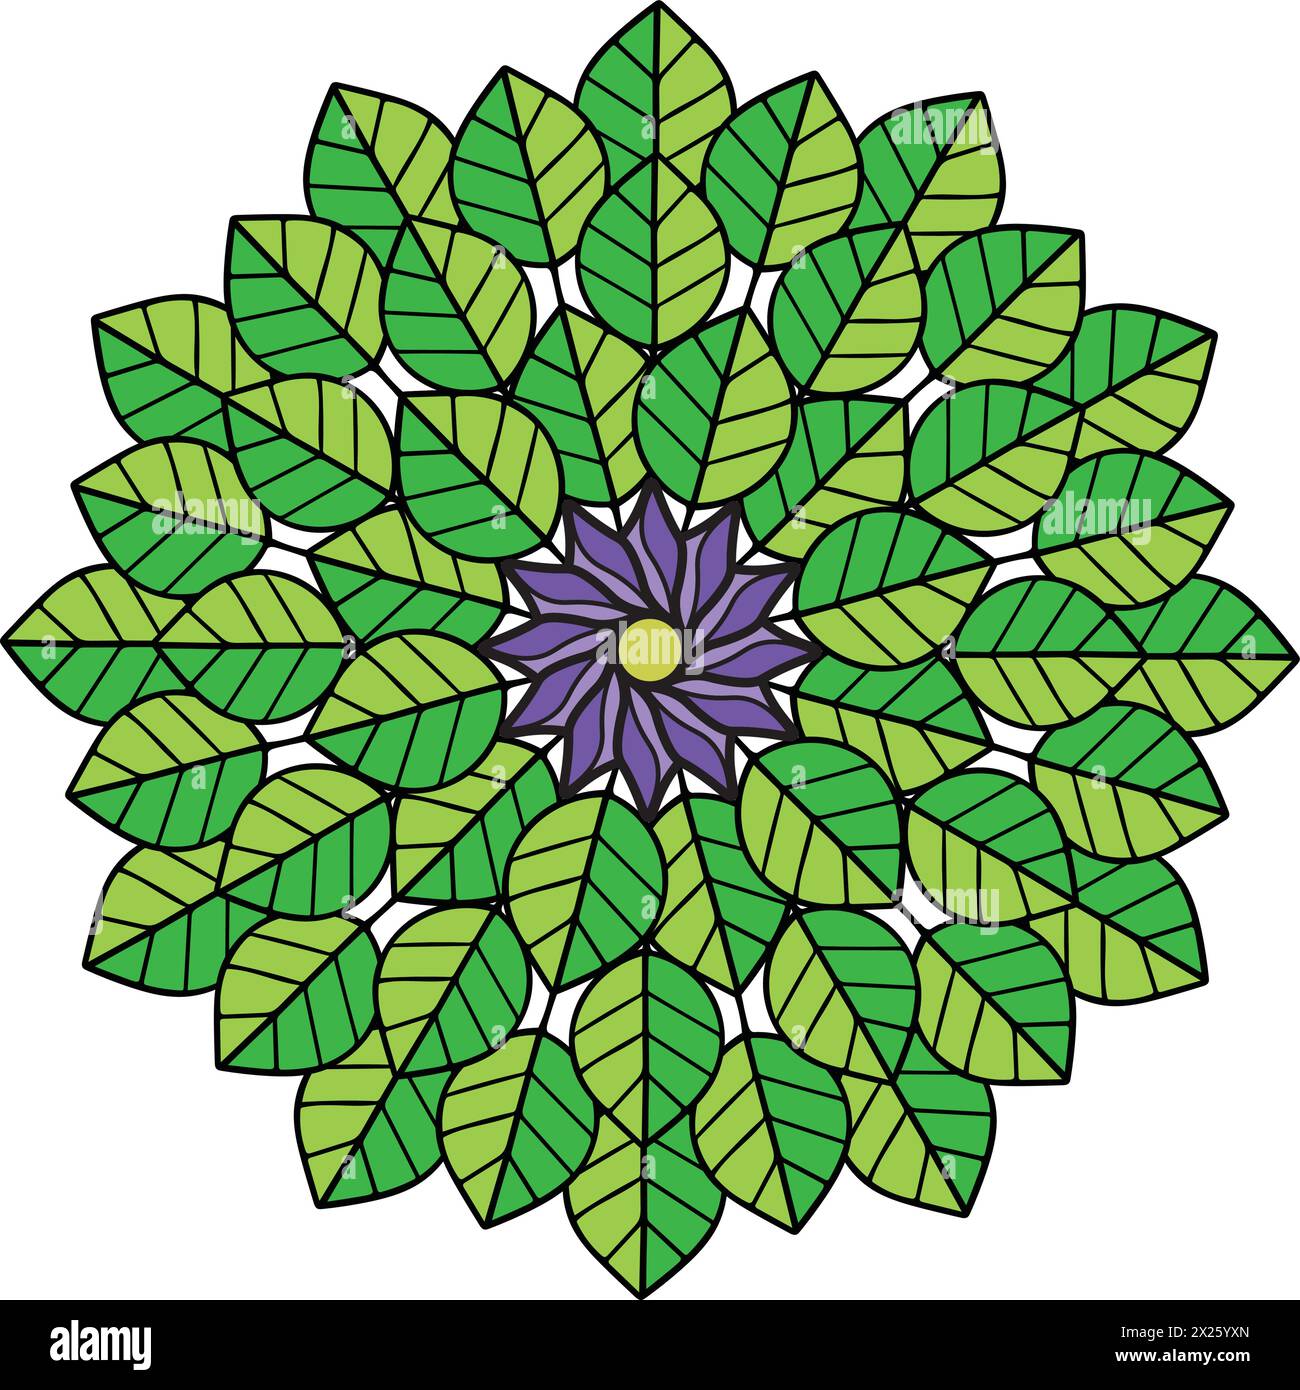 Kreis aus grünen Blättern mit einer lila Blume in der Mitte, perfekt für den Einsatz in Web-Design- und Grafikdesign-Projekten Stock Vektor